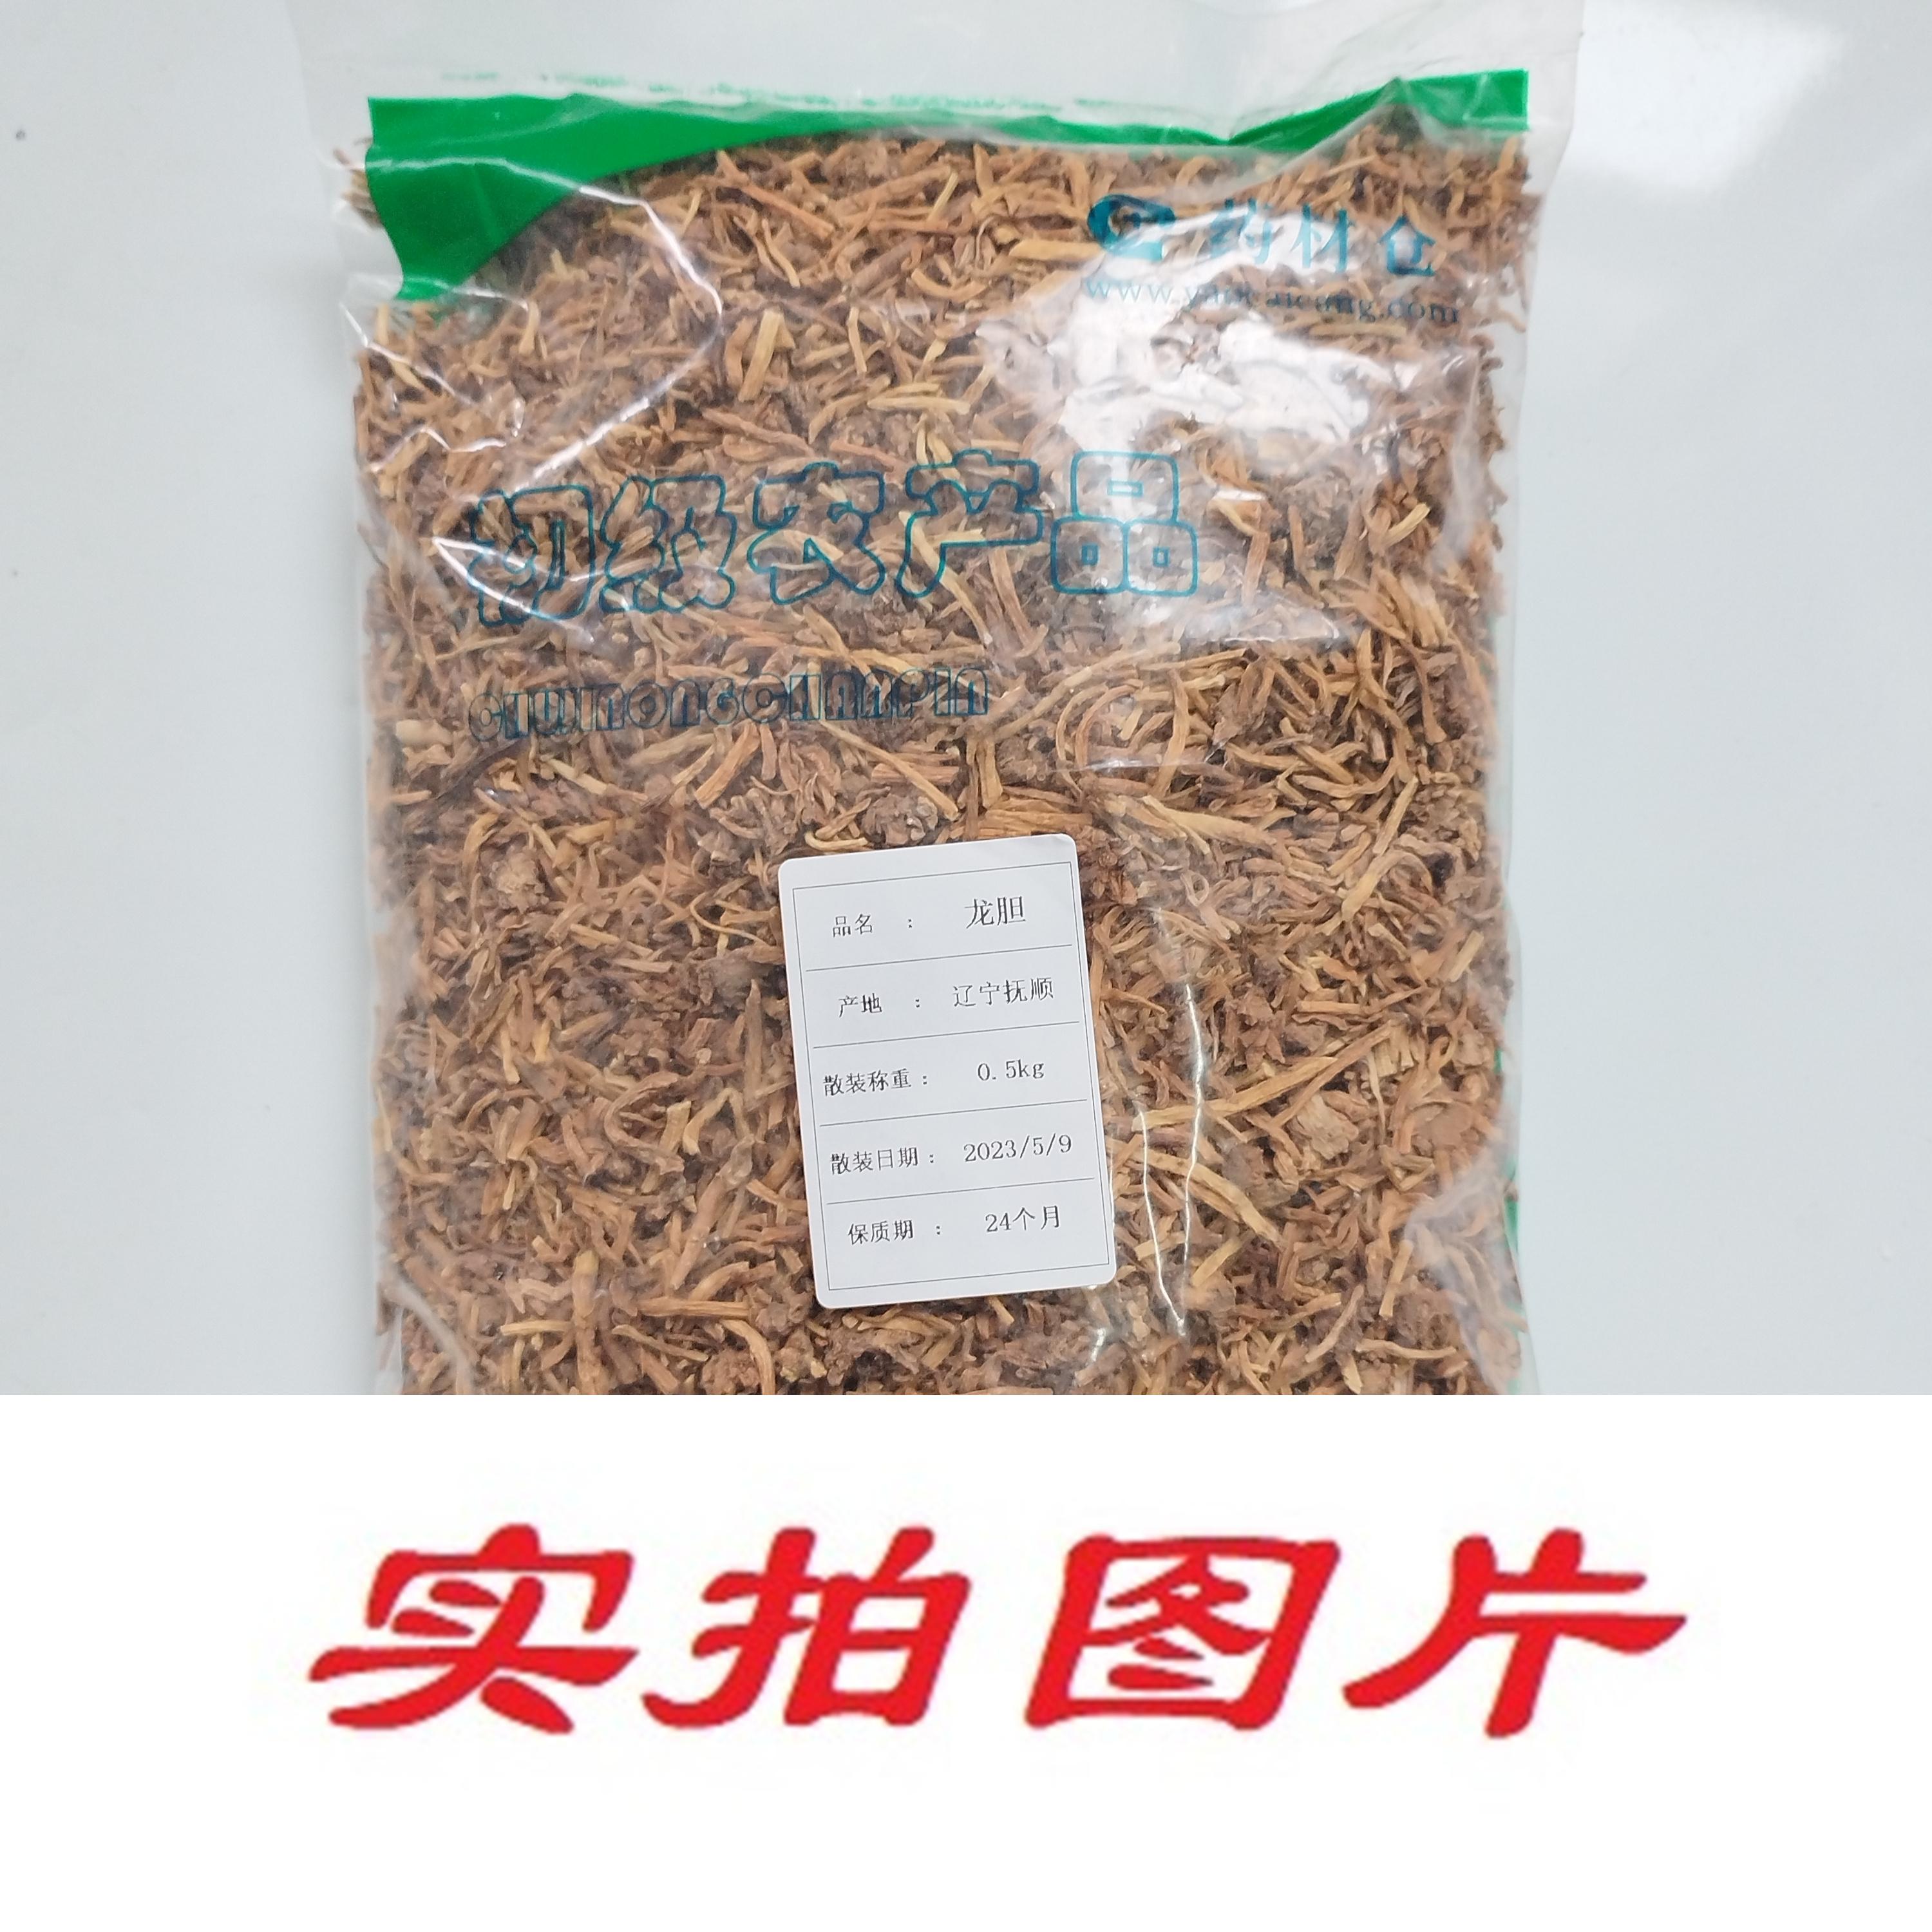 【】龙胆0.5kg-农副产品